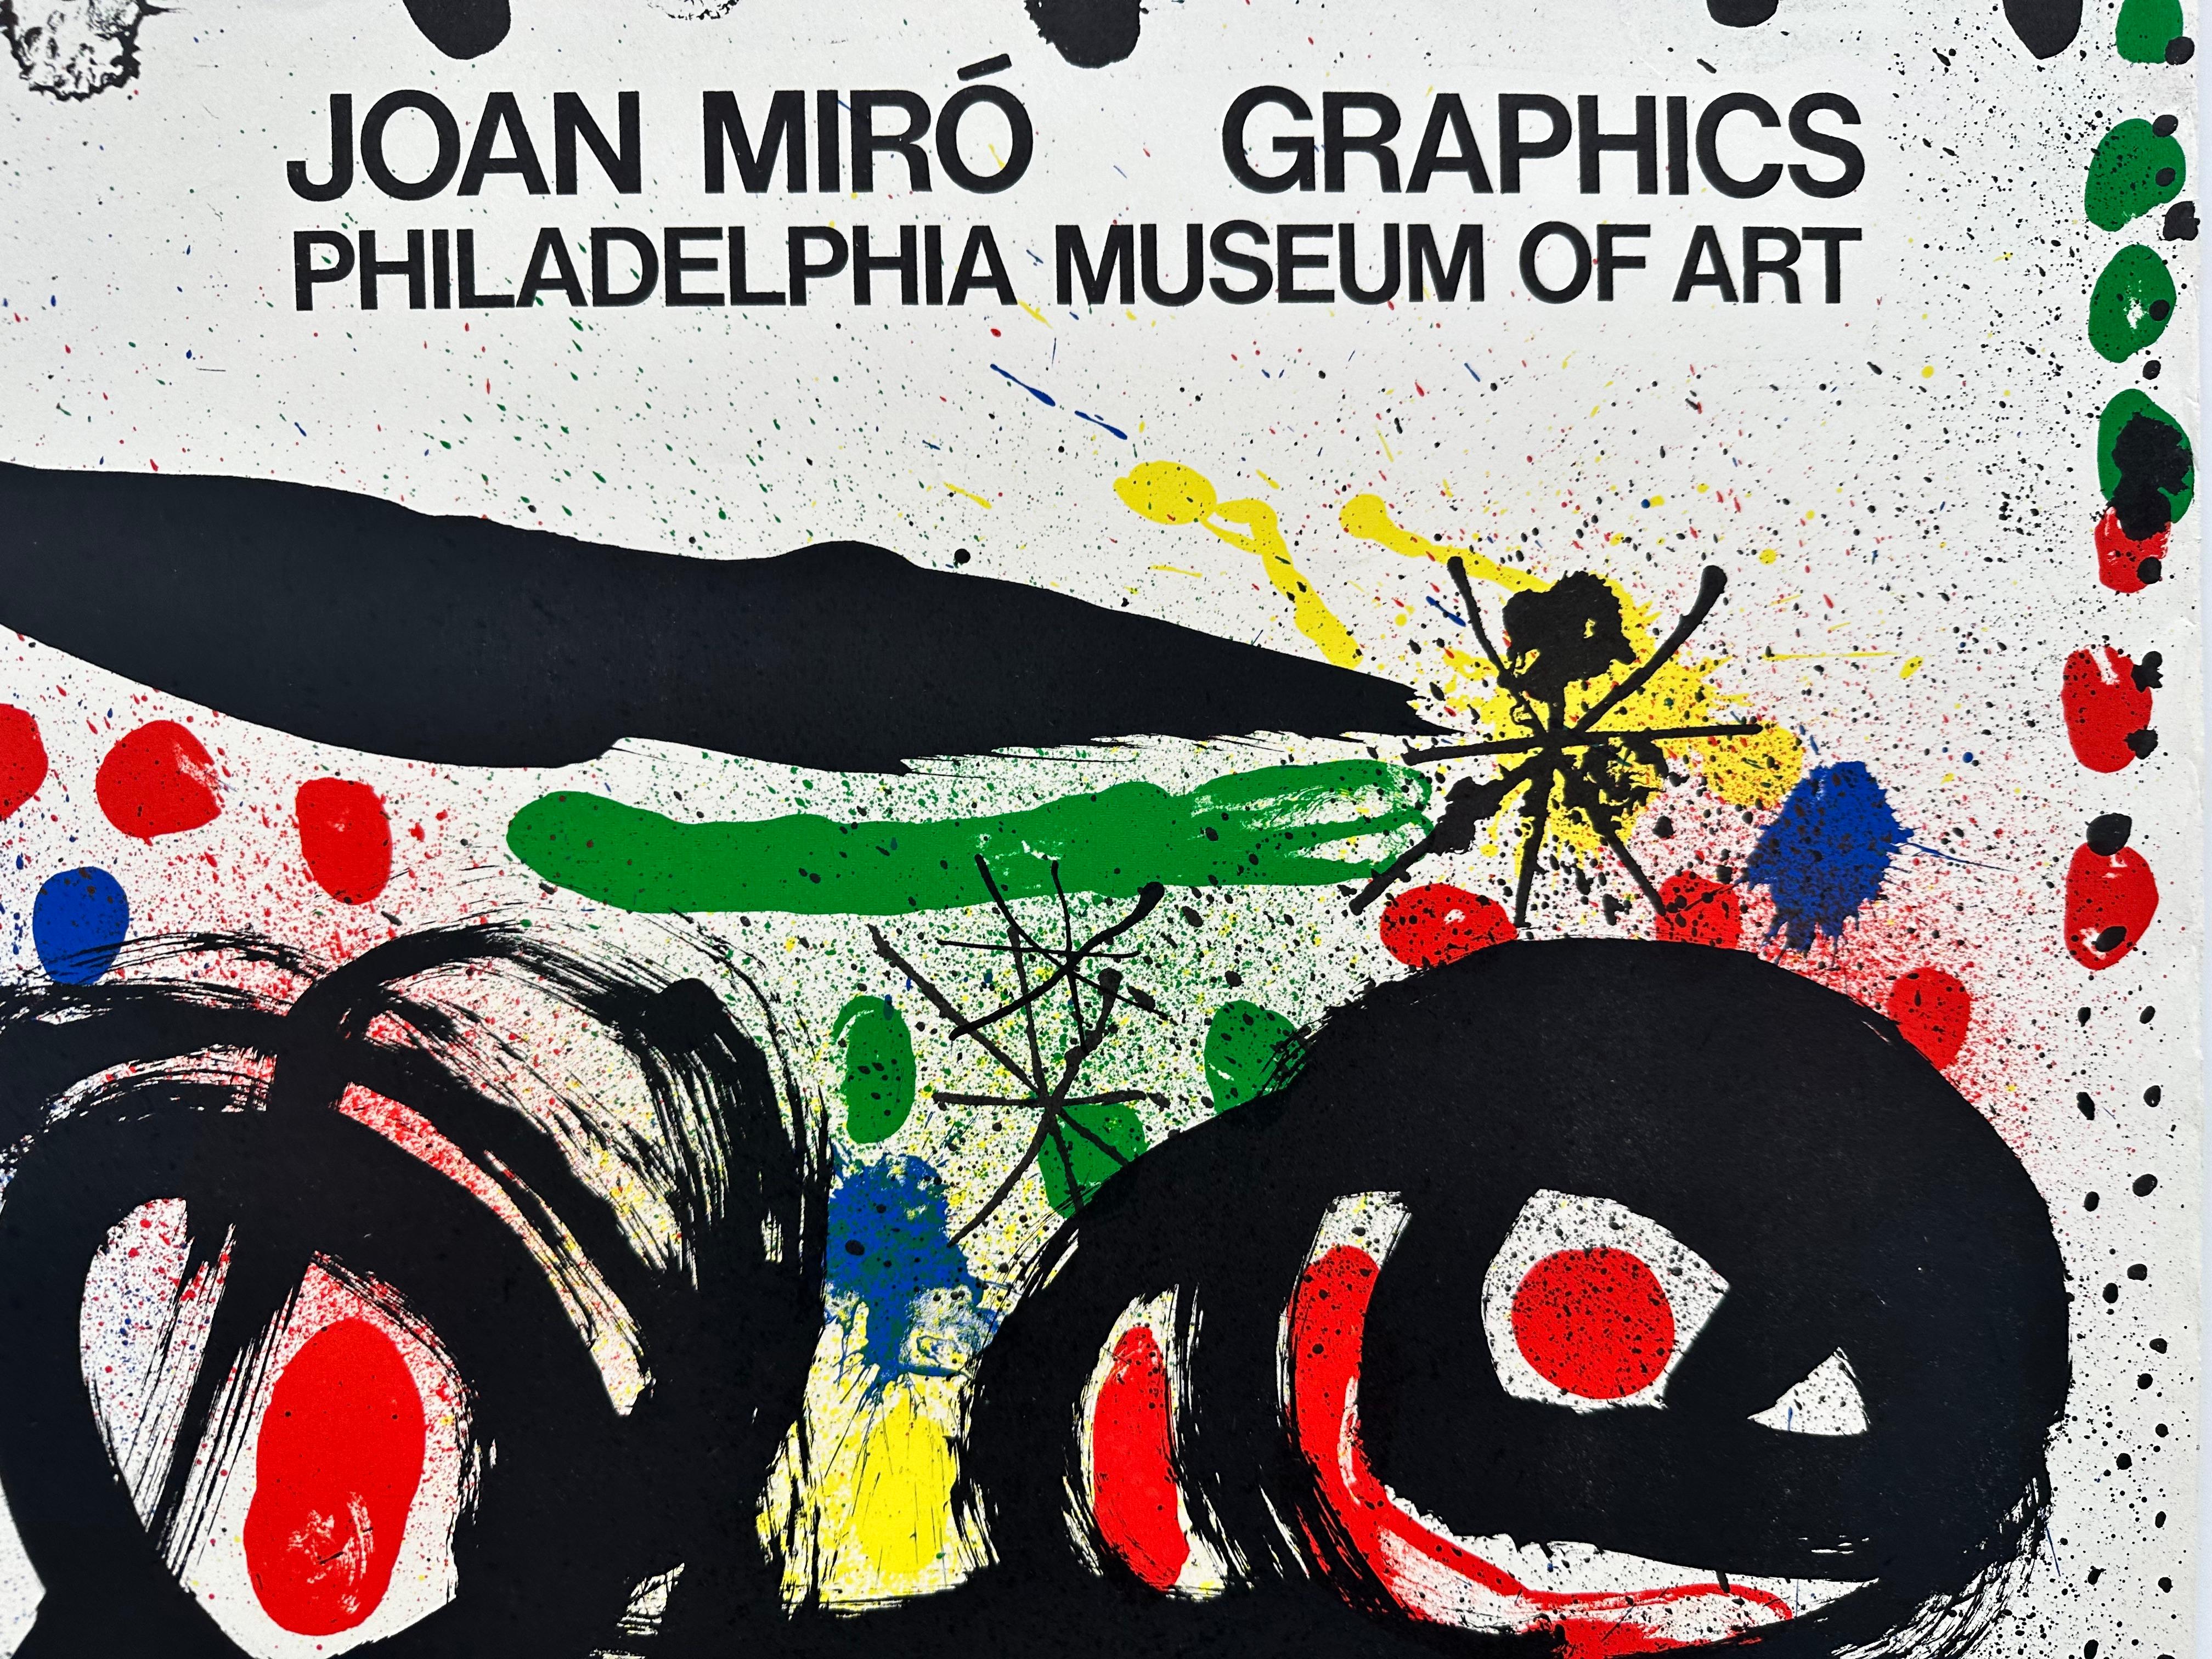 Affiche d'exposition de Philadelphie de 1966 - Print de (after) Joan Miró